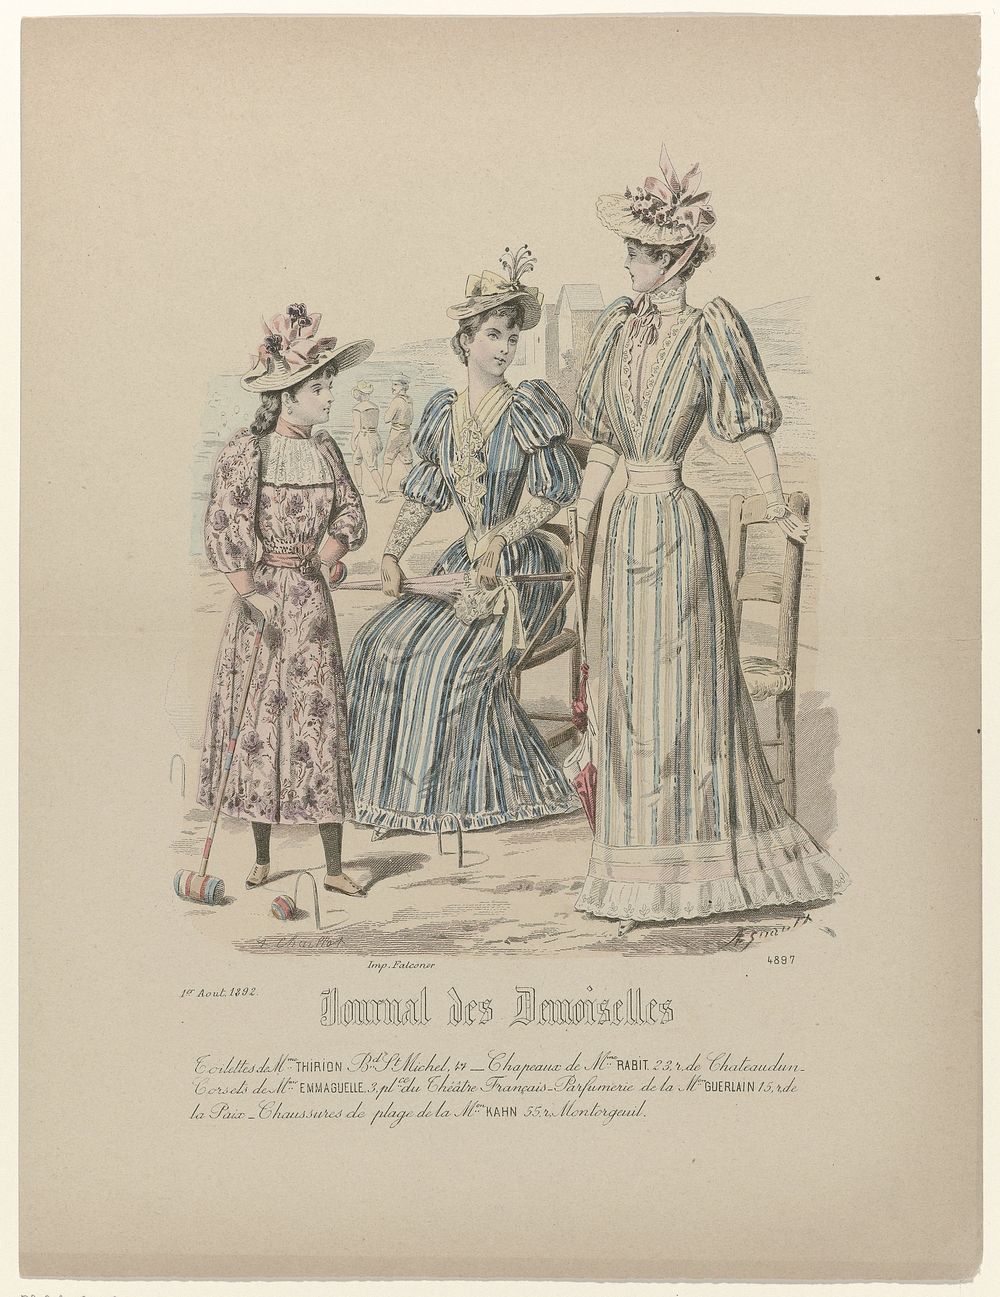 Journal des Demoiselles, 1 août 1892, No. 4897 : Toilettes de Mme Thirion (...) (1892) by A Chaillot, Esnault and Falconer